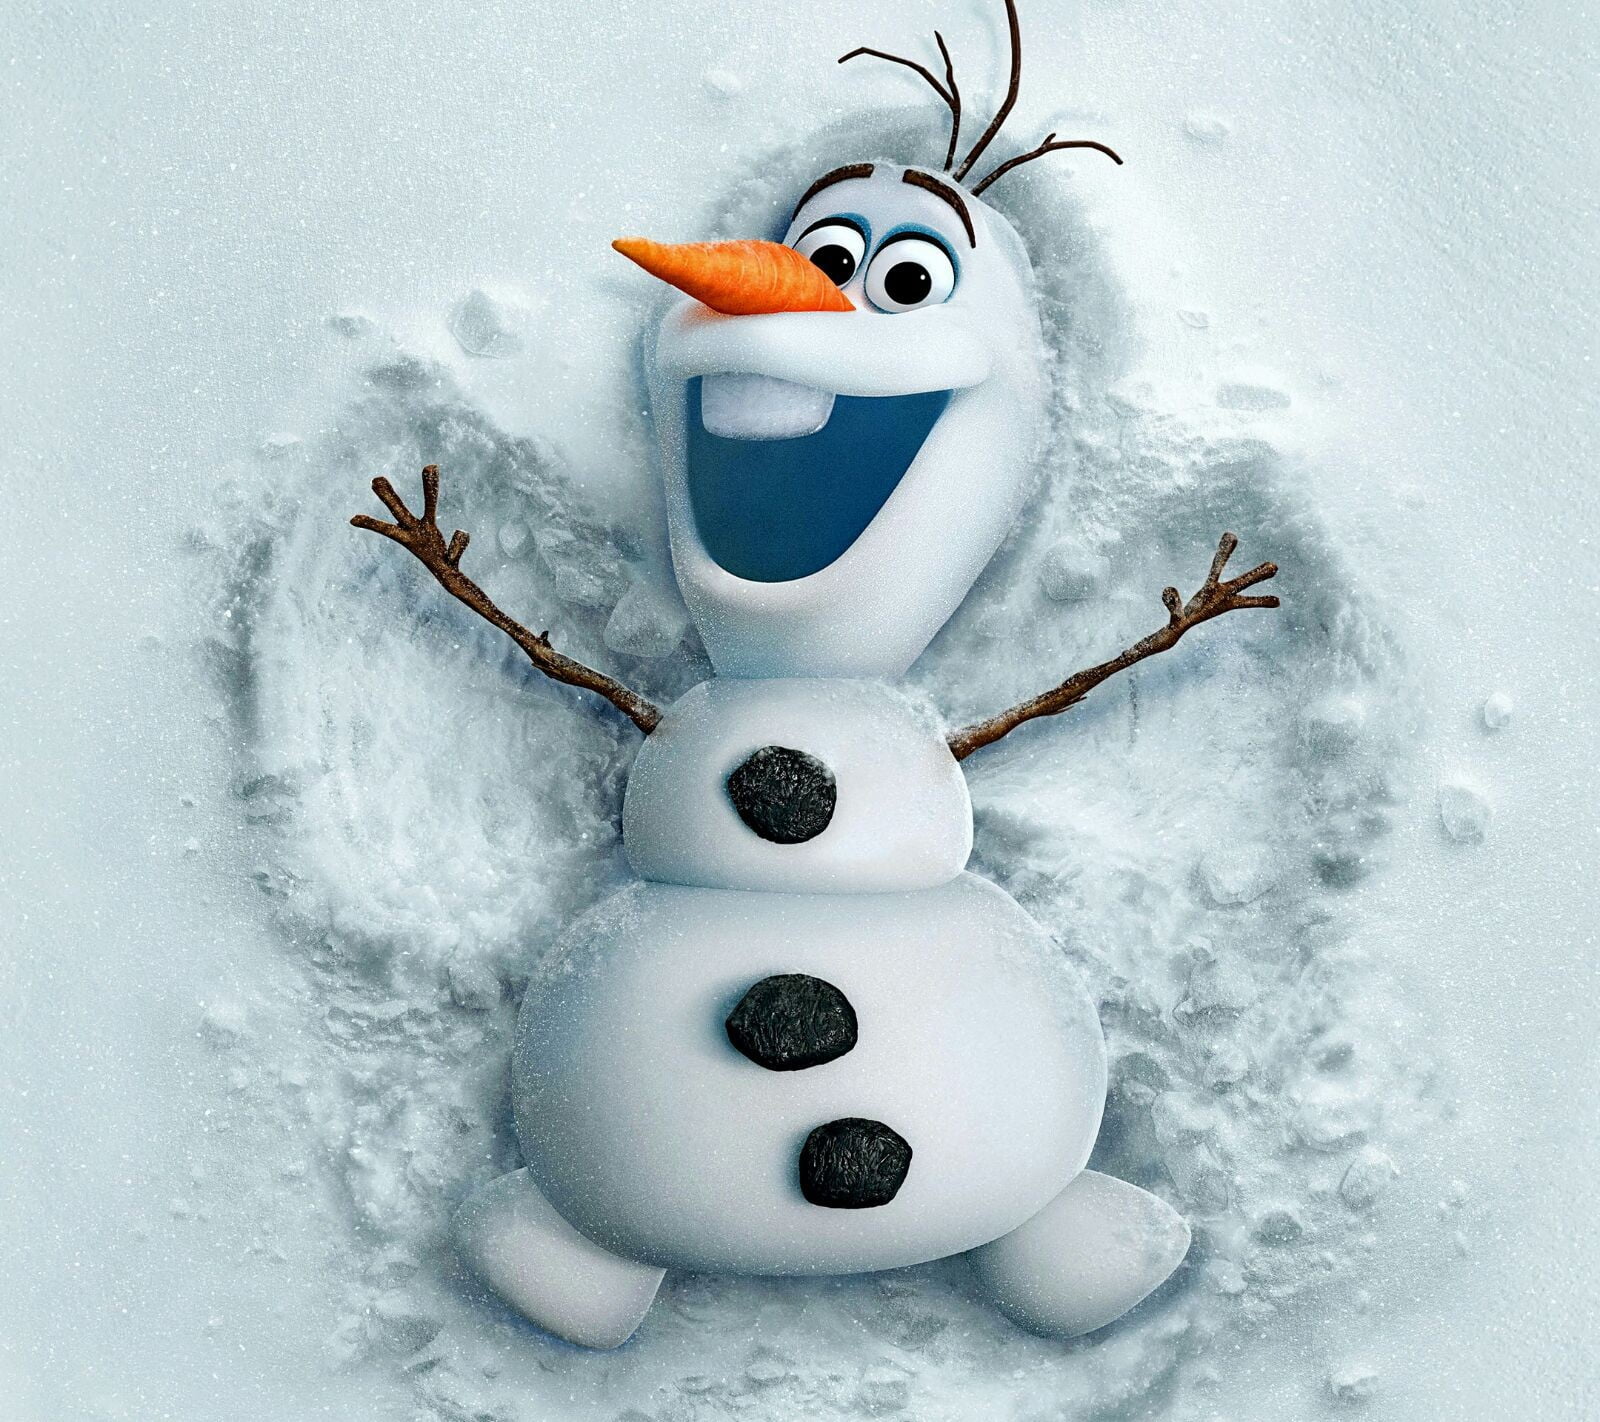 Disney Frozen Olaf digital wallpaper, snowman, Frozen (movie)